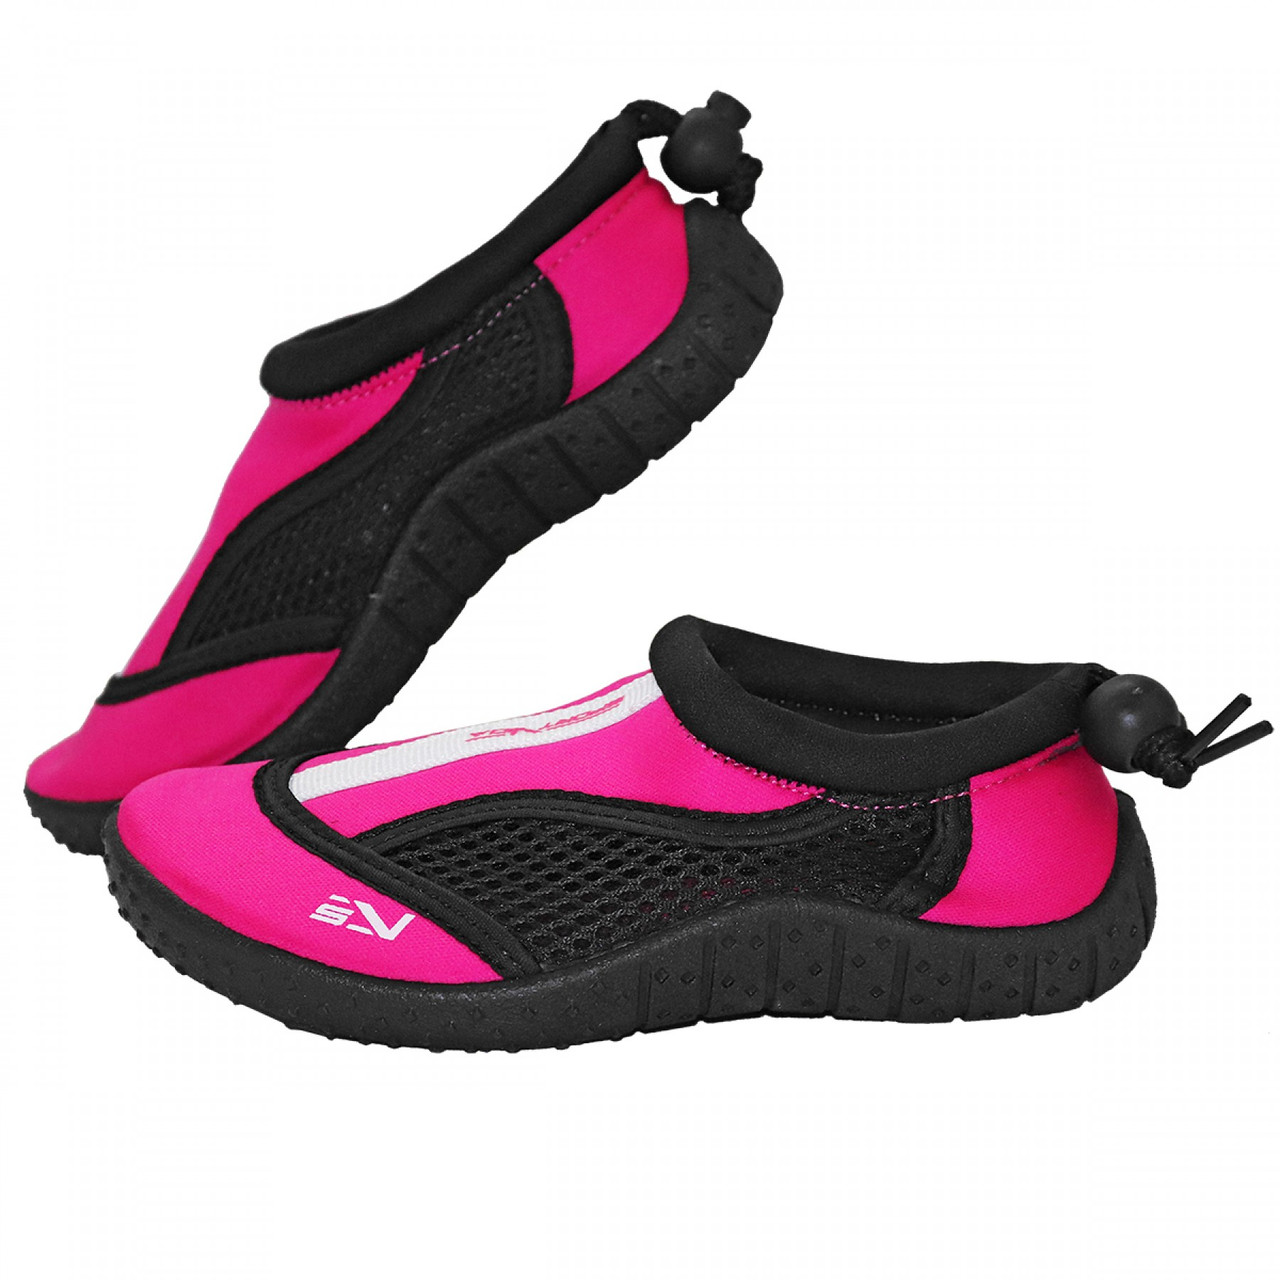 Взуття для пляжу та коралів (аквашузи) SportVida SV-GY0001-R34 Size 34 Black/Pink